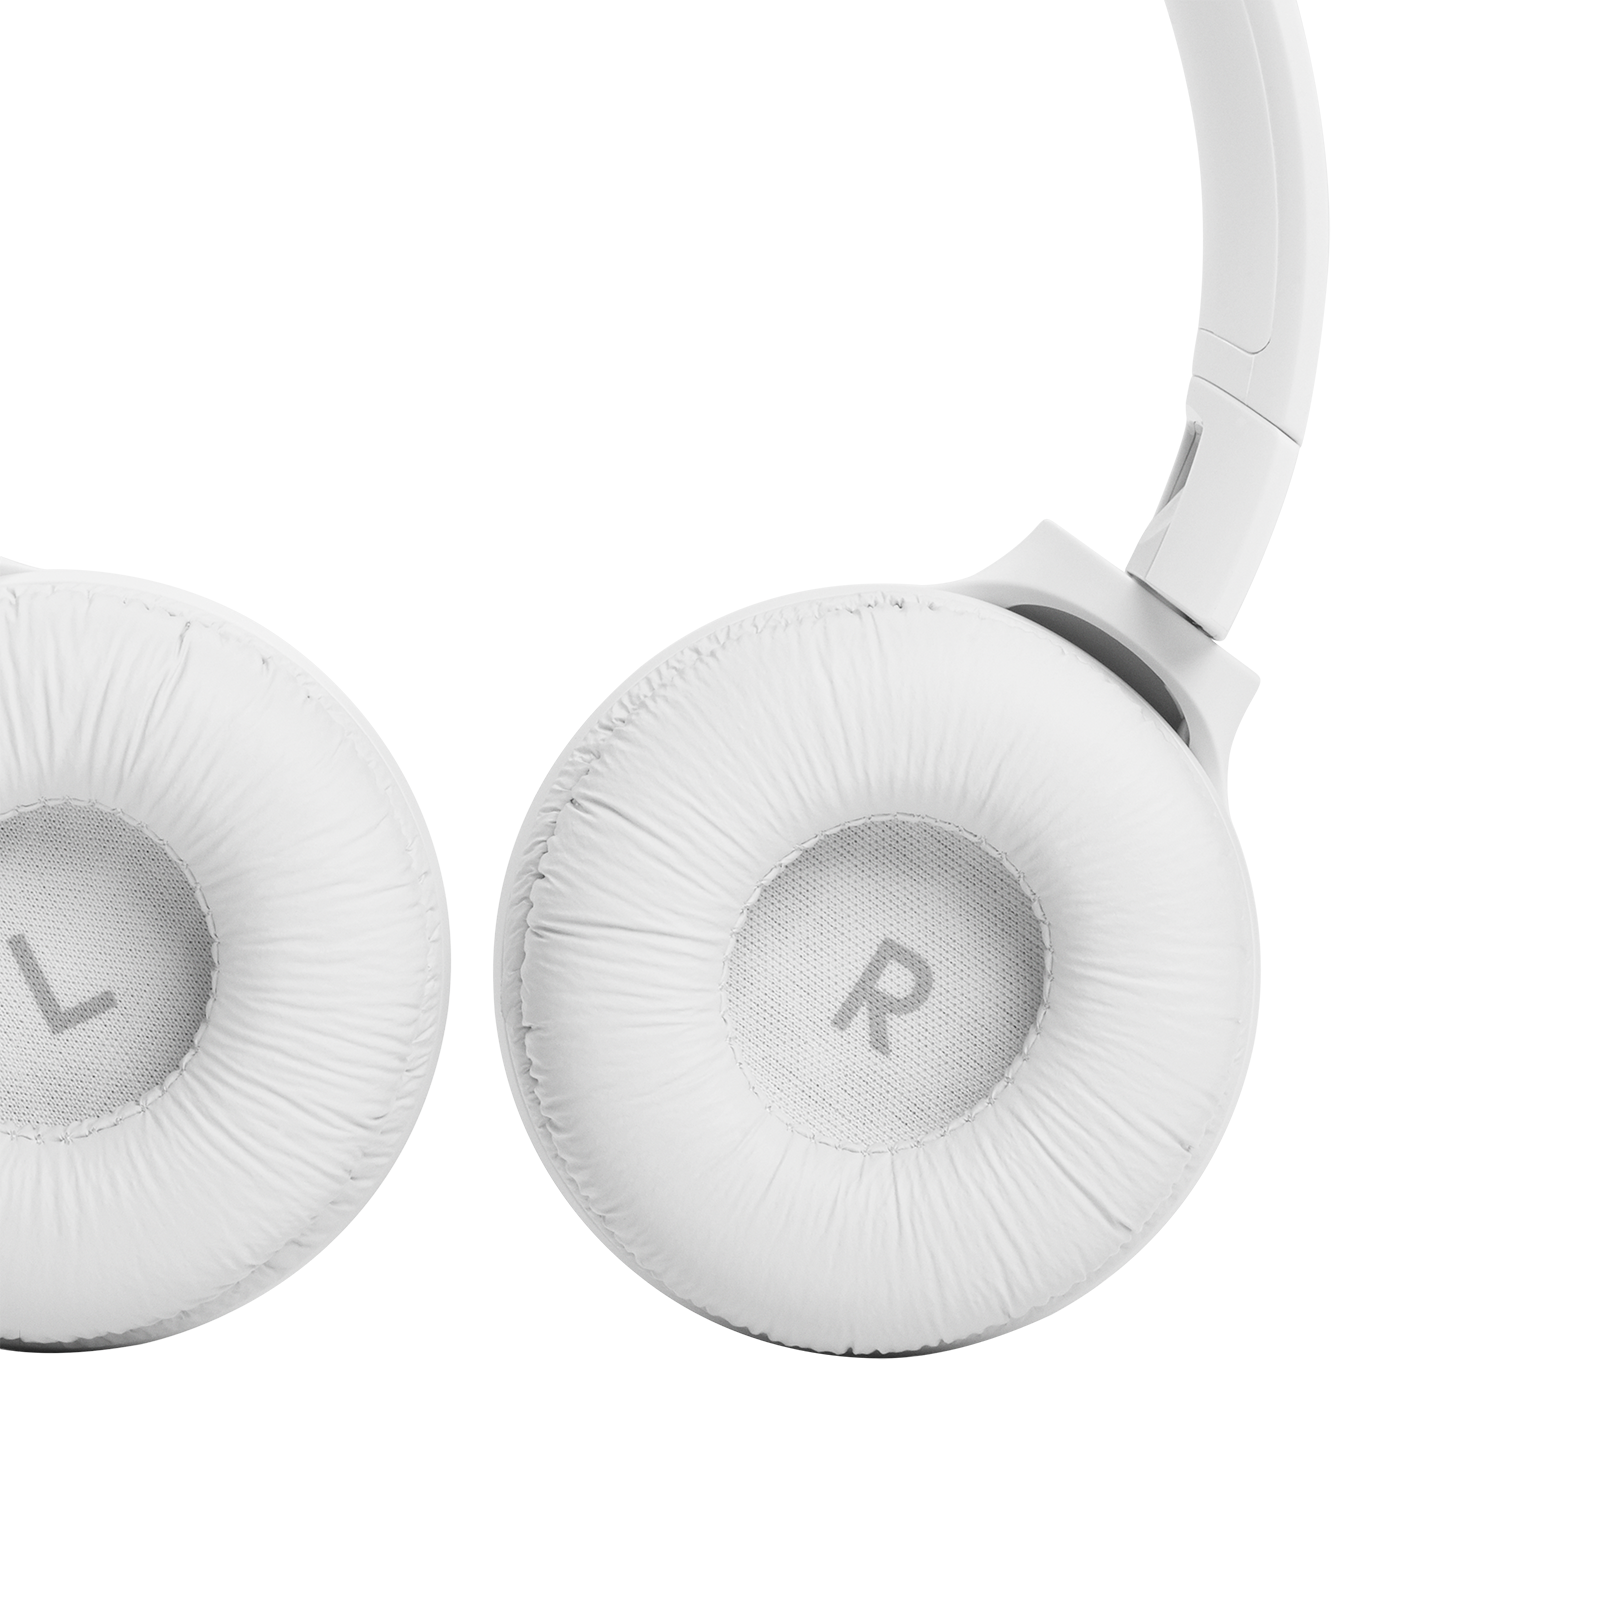 JBL Tune 510BT - White - Wireless on-ear headphones - Detailshot 2